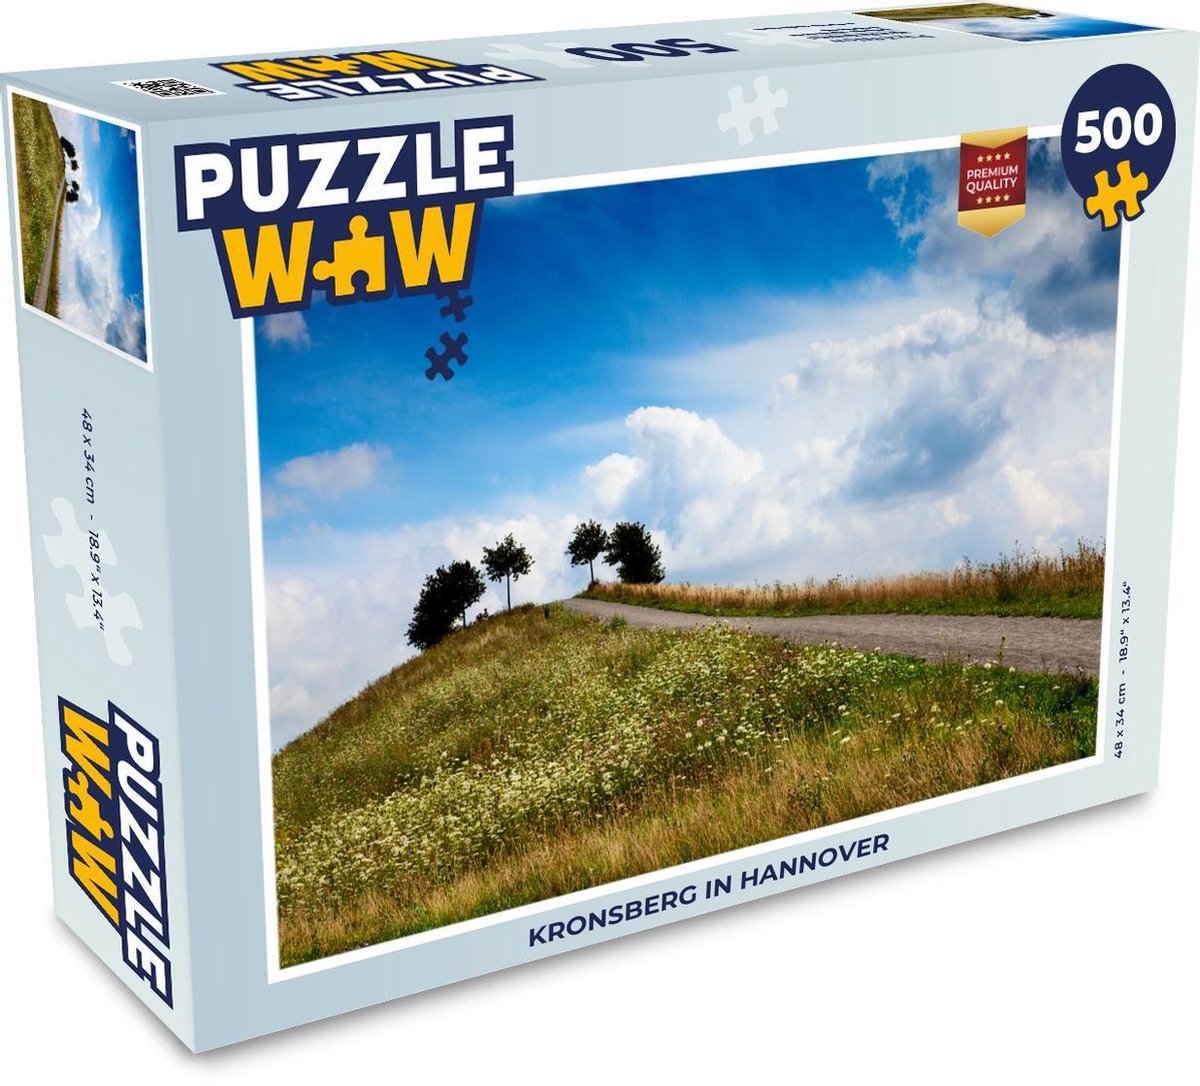 Afbeelding van product Puzzel 500 stukjes Hannover - Kronsberg in Hannover - PuzzleWow heeft +100000 puzzels